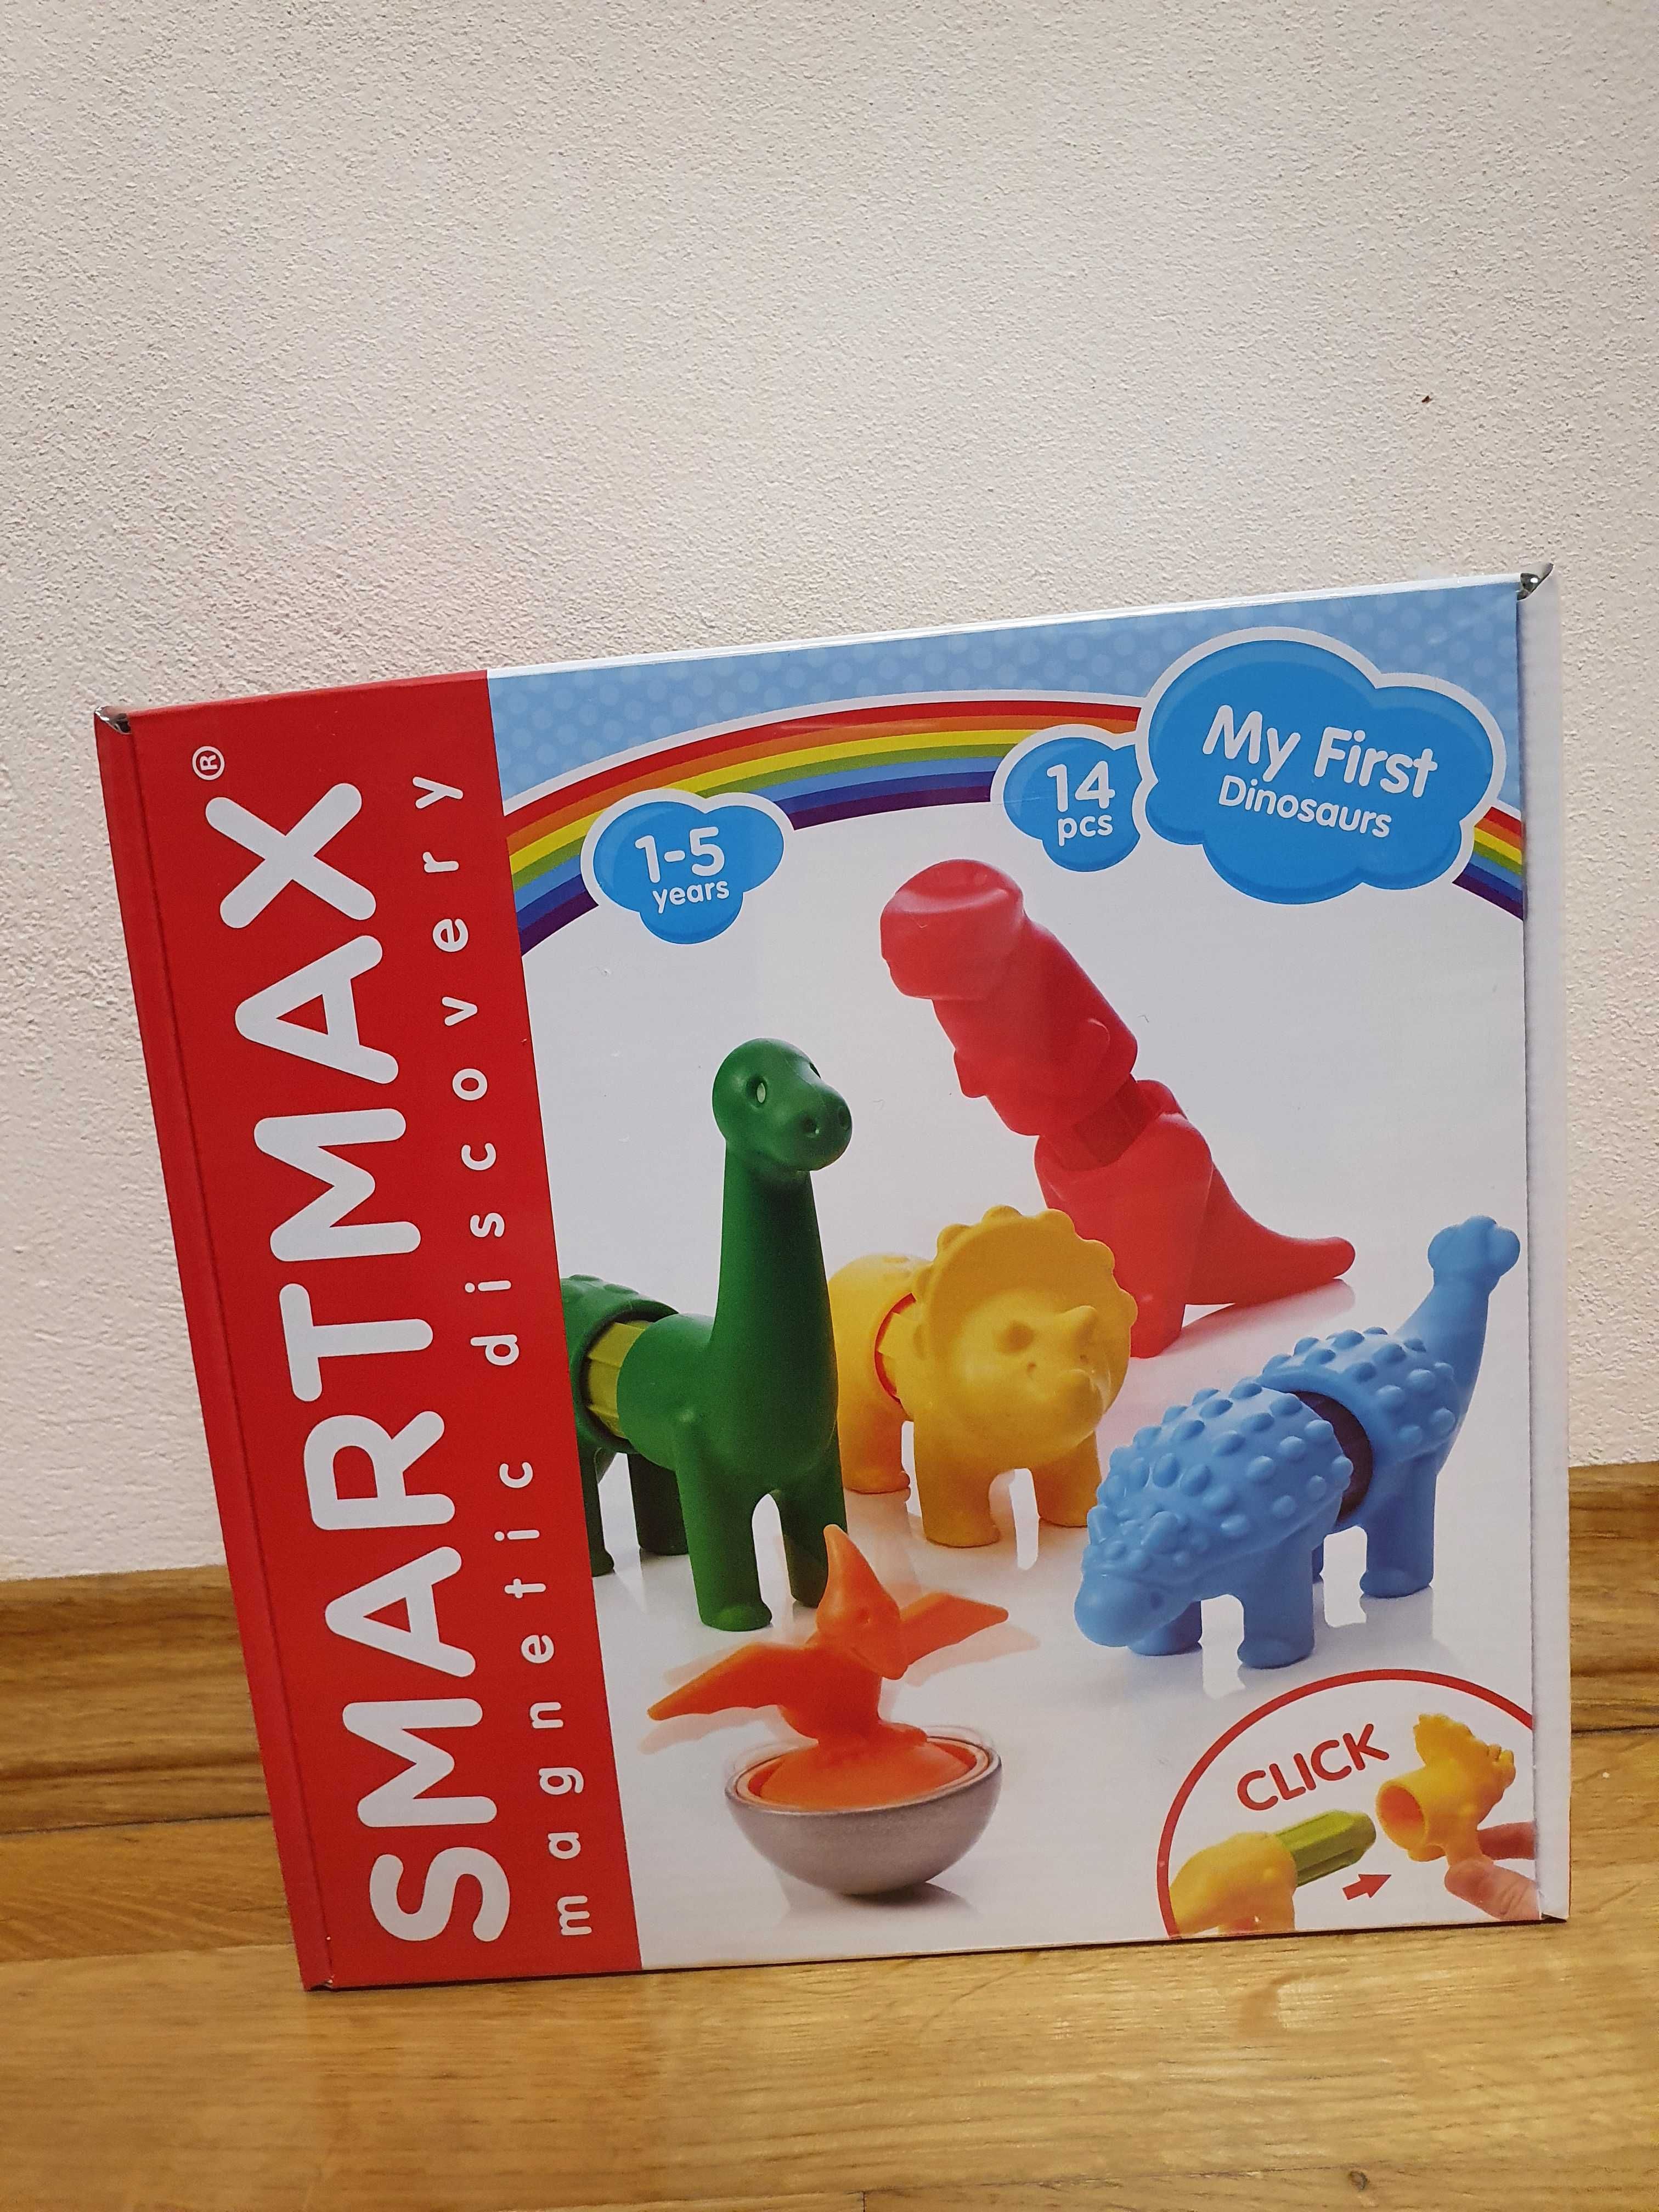 SmartMax Магнитный конструктор "Мои первые динозавры"